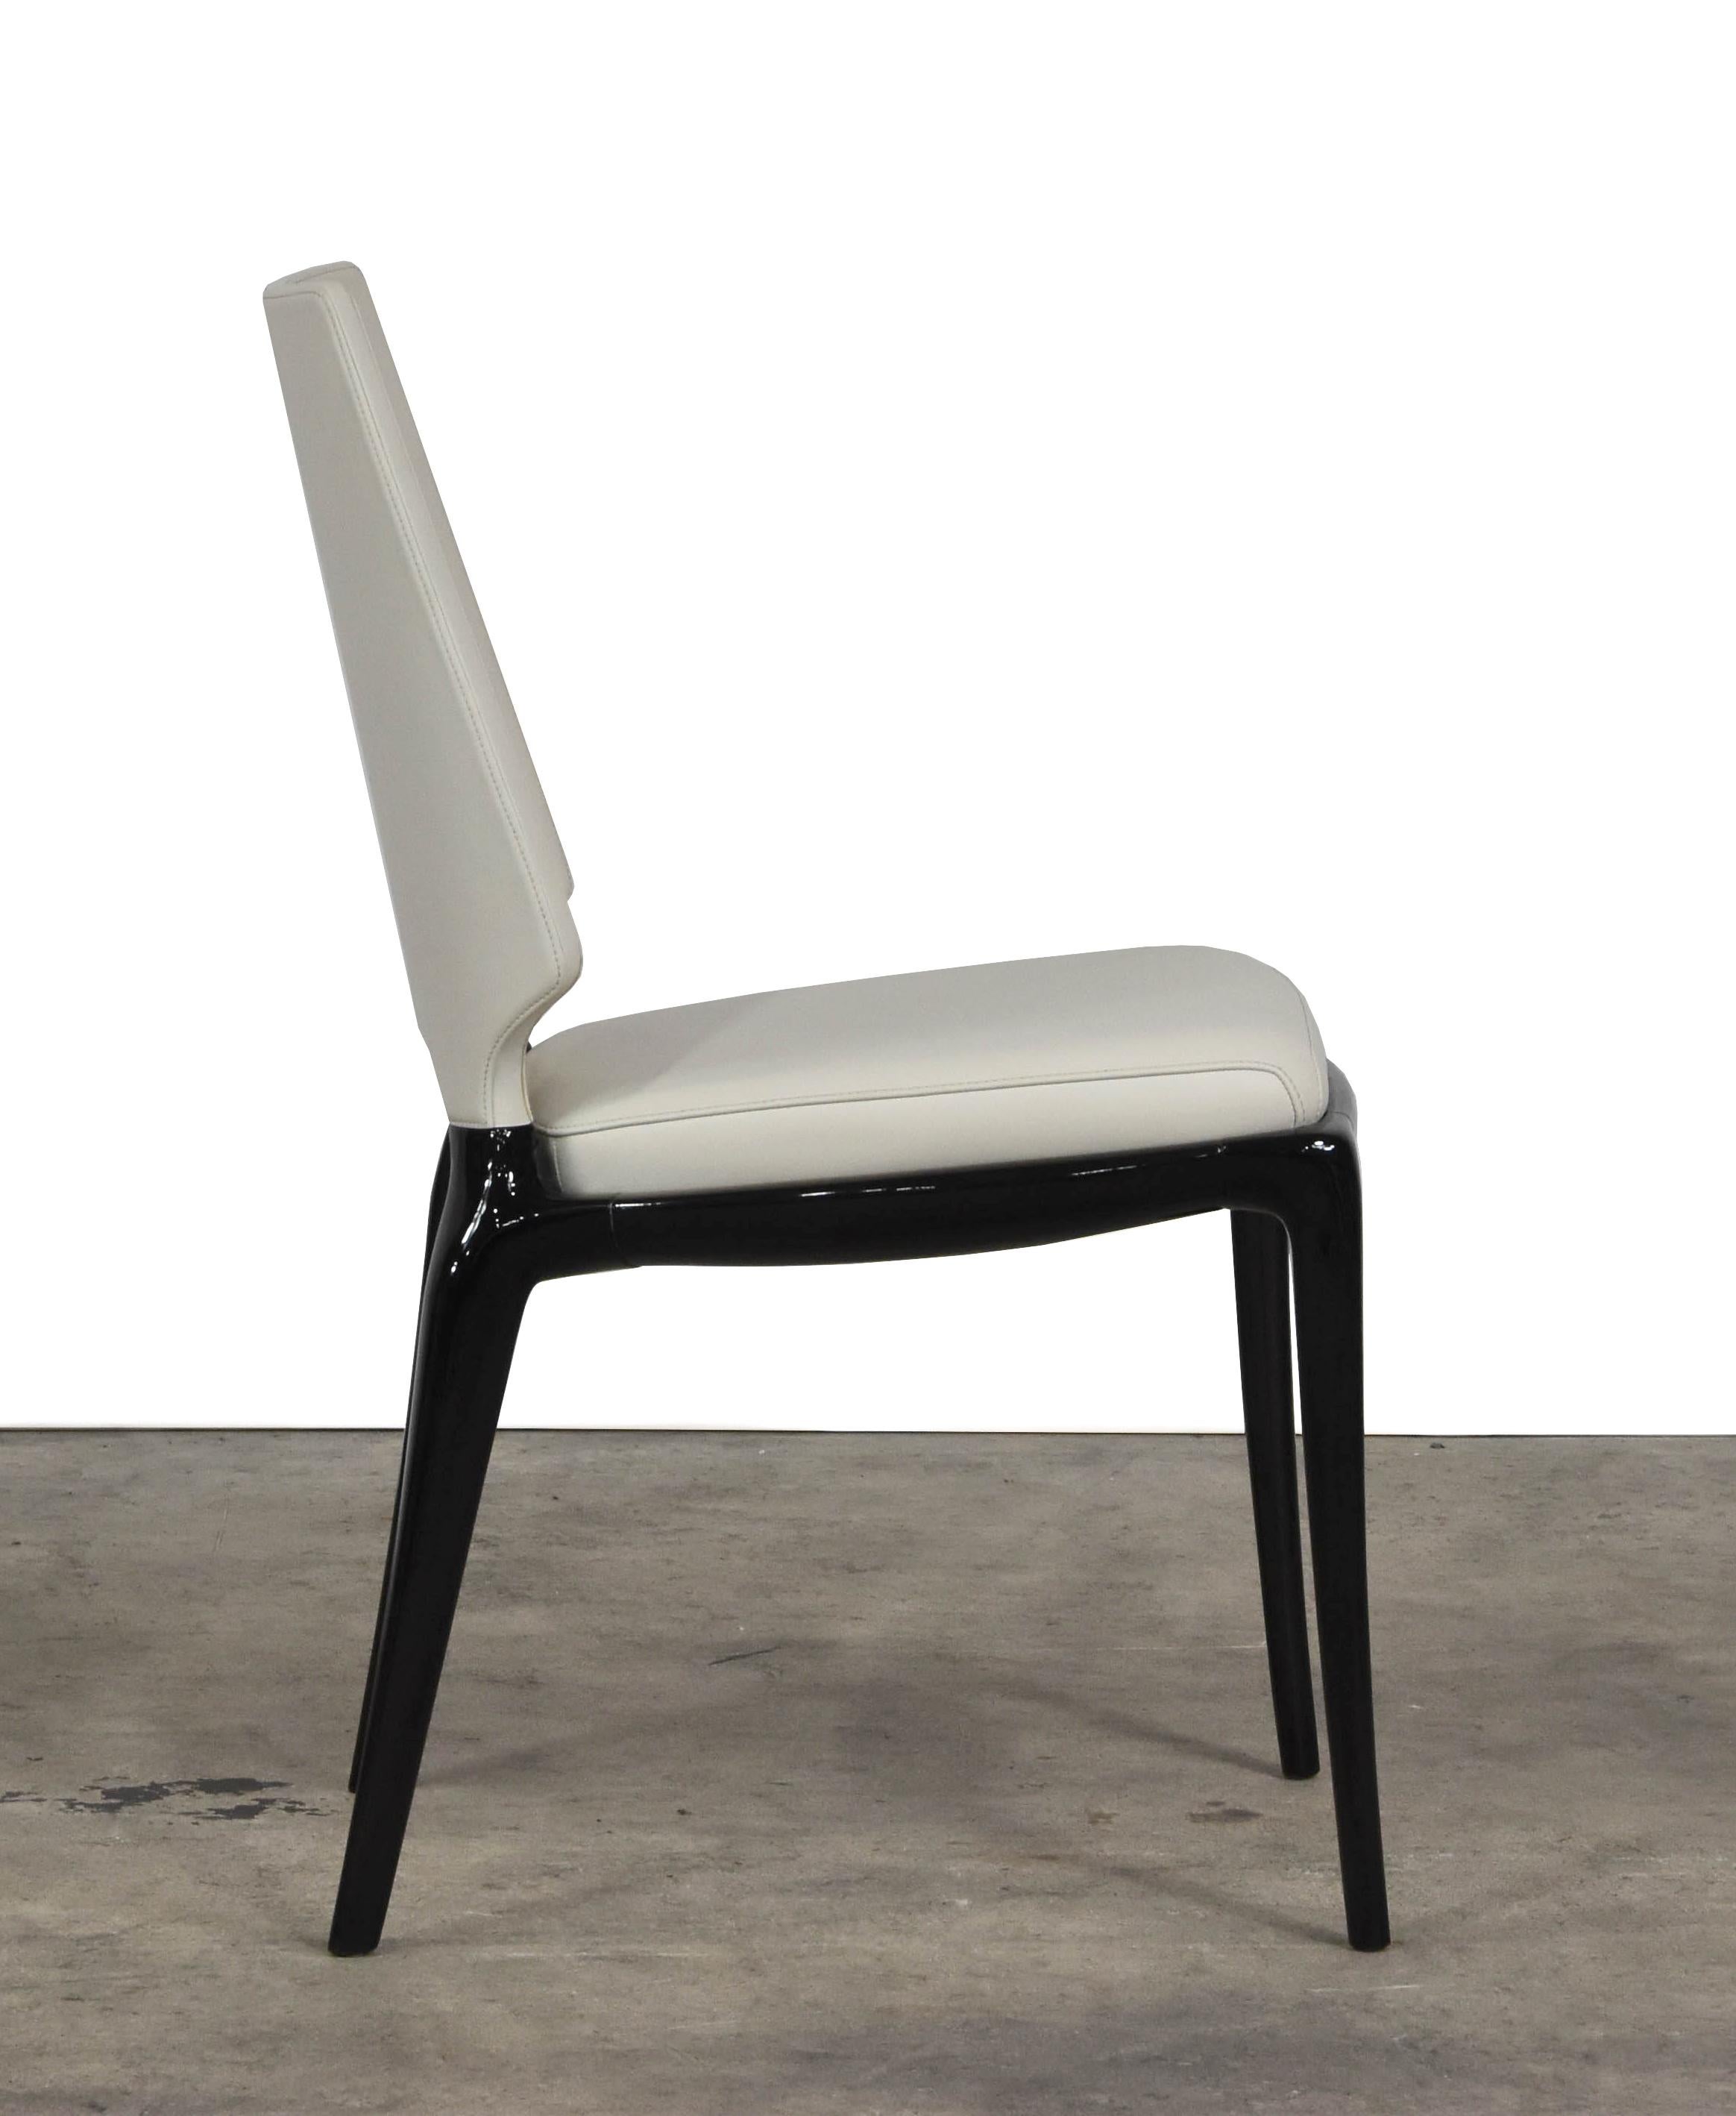 contour plastic chairs